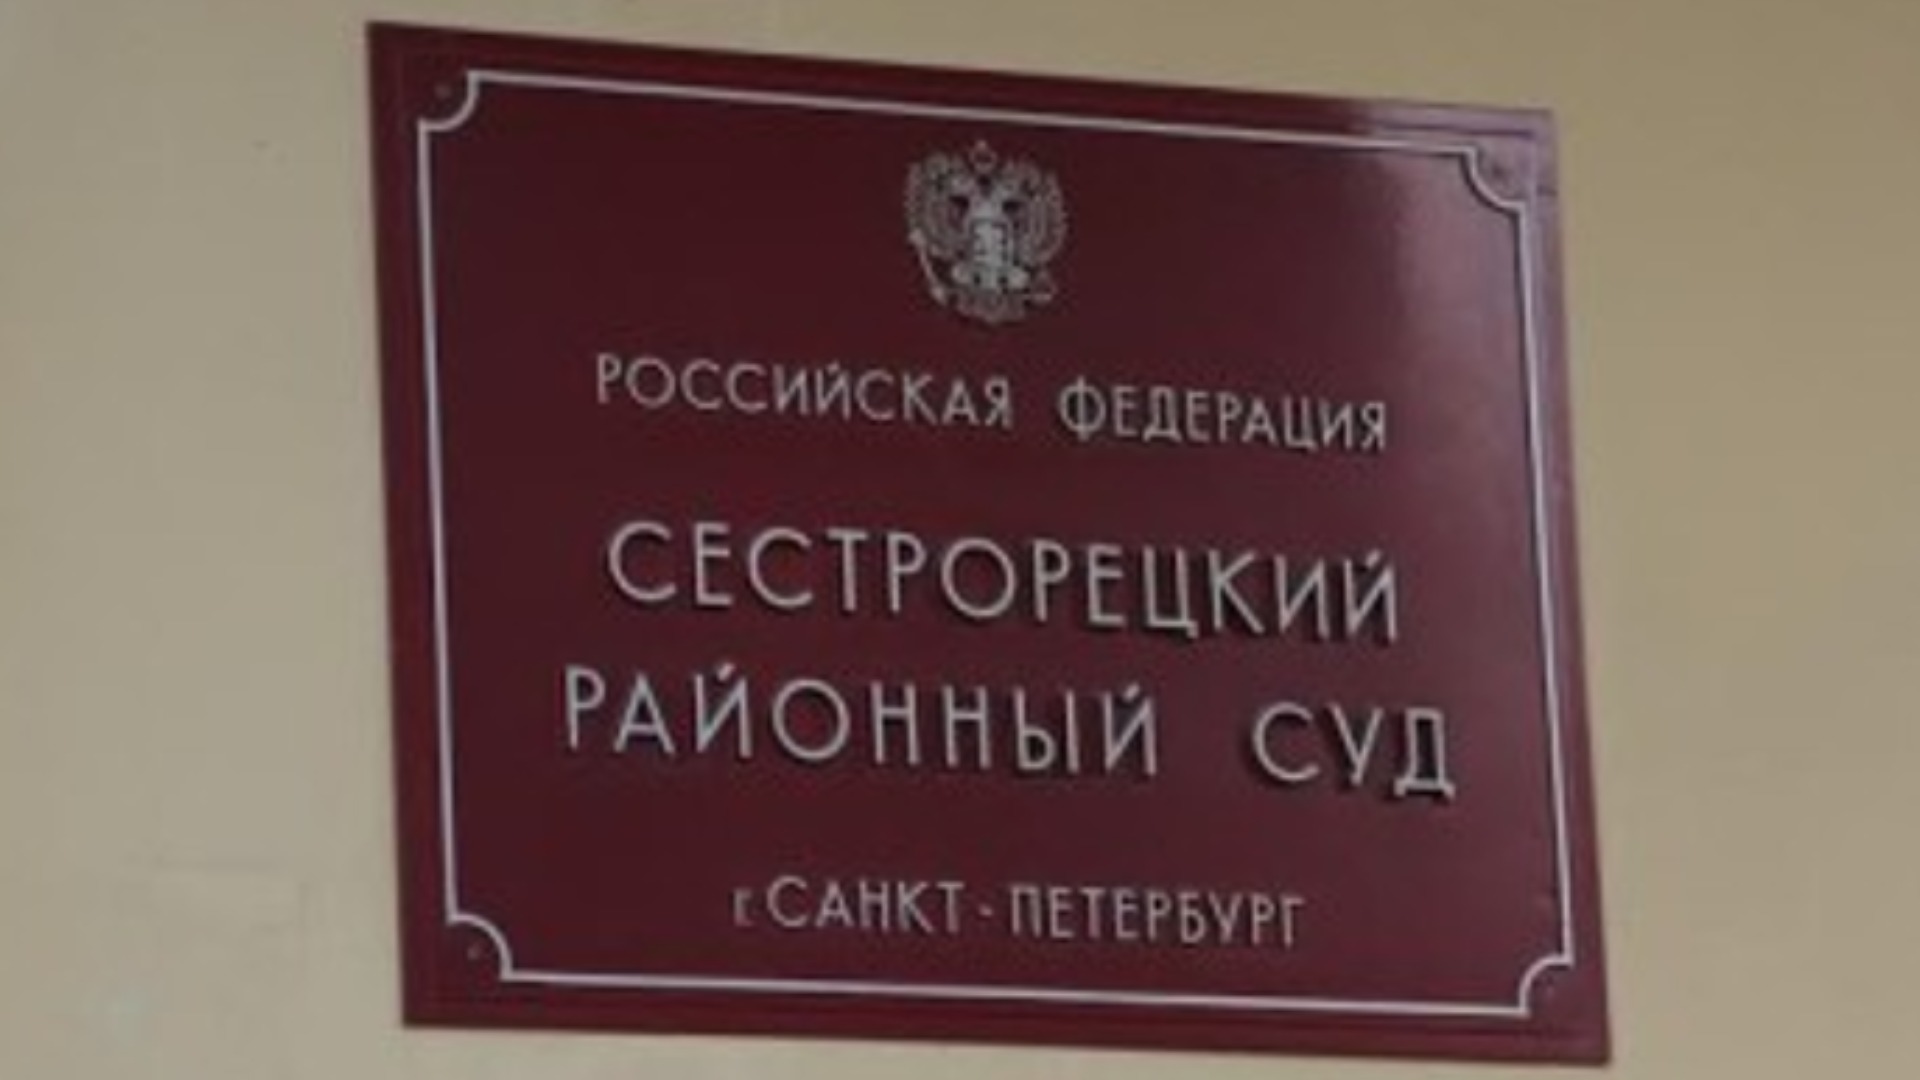 Информация по Сестрорецкому районному суду в Спб.